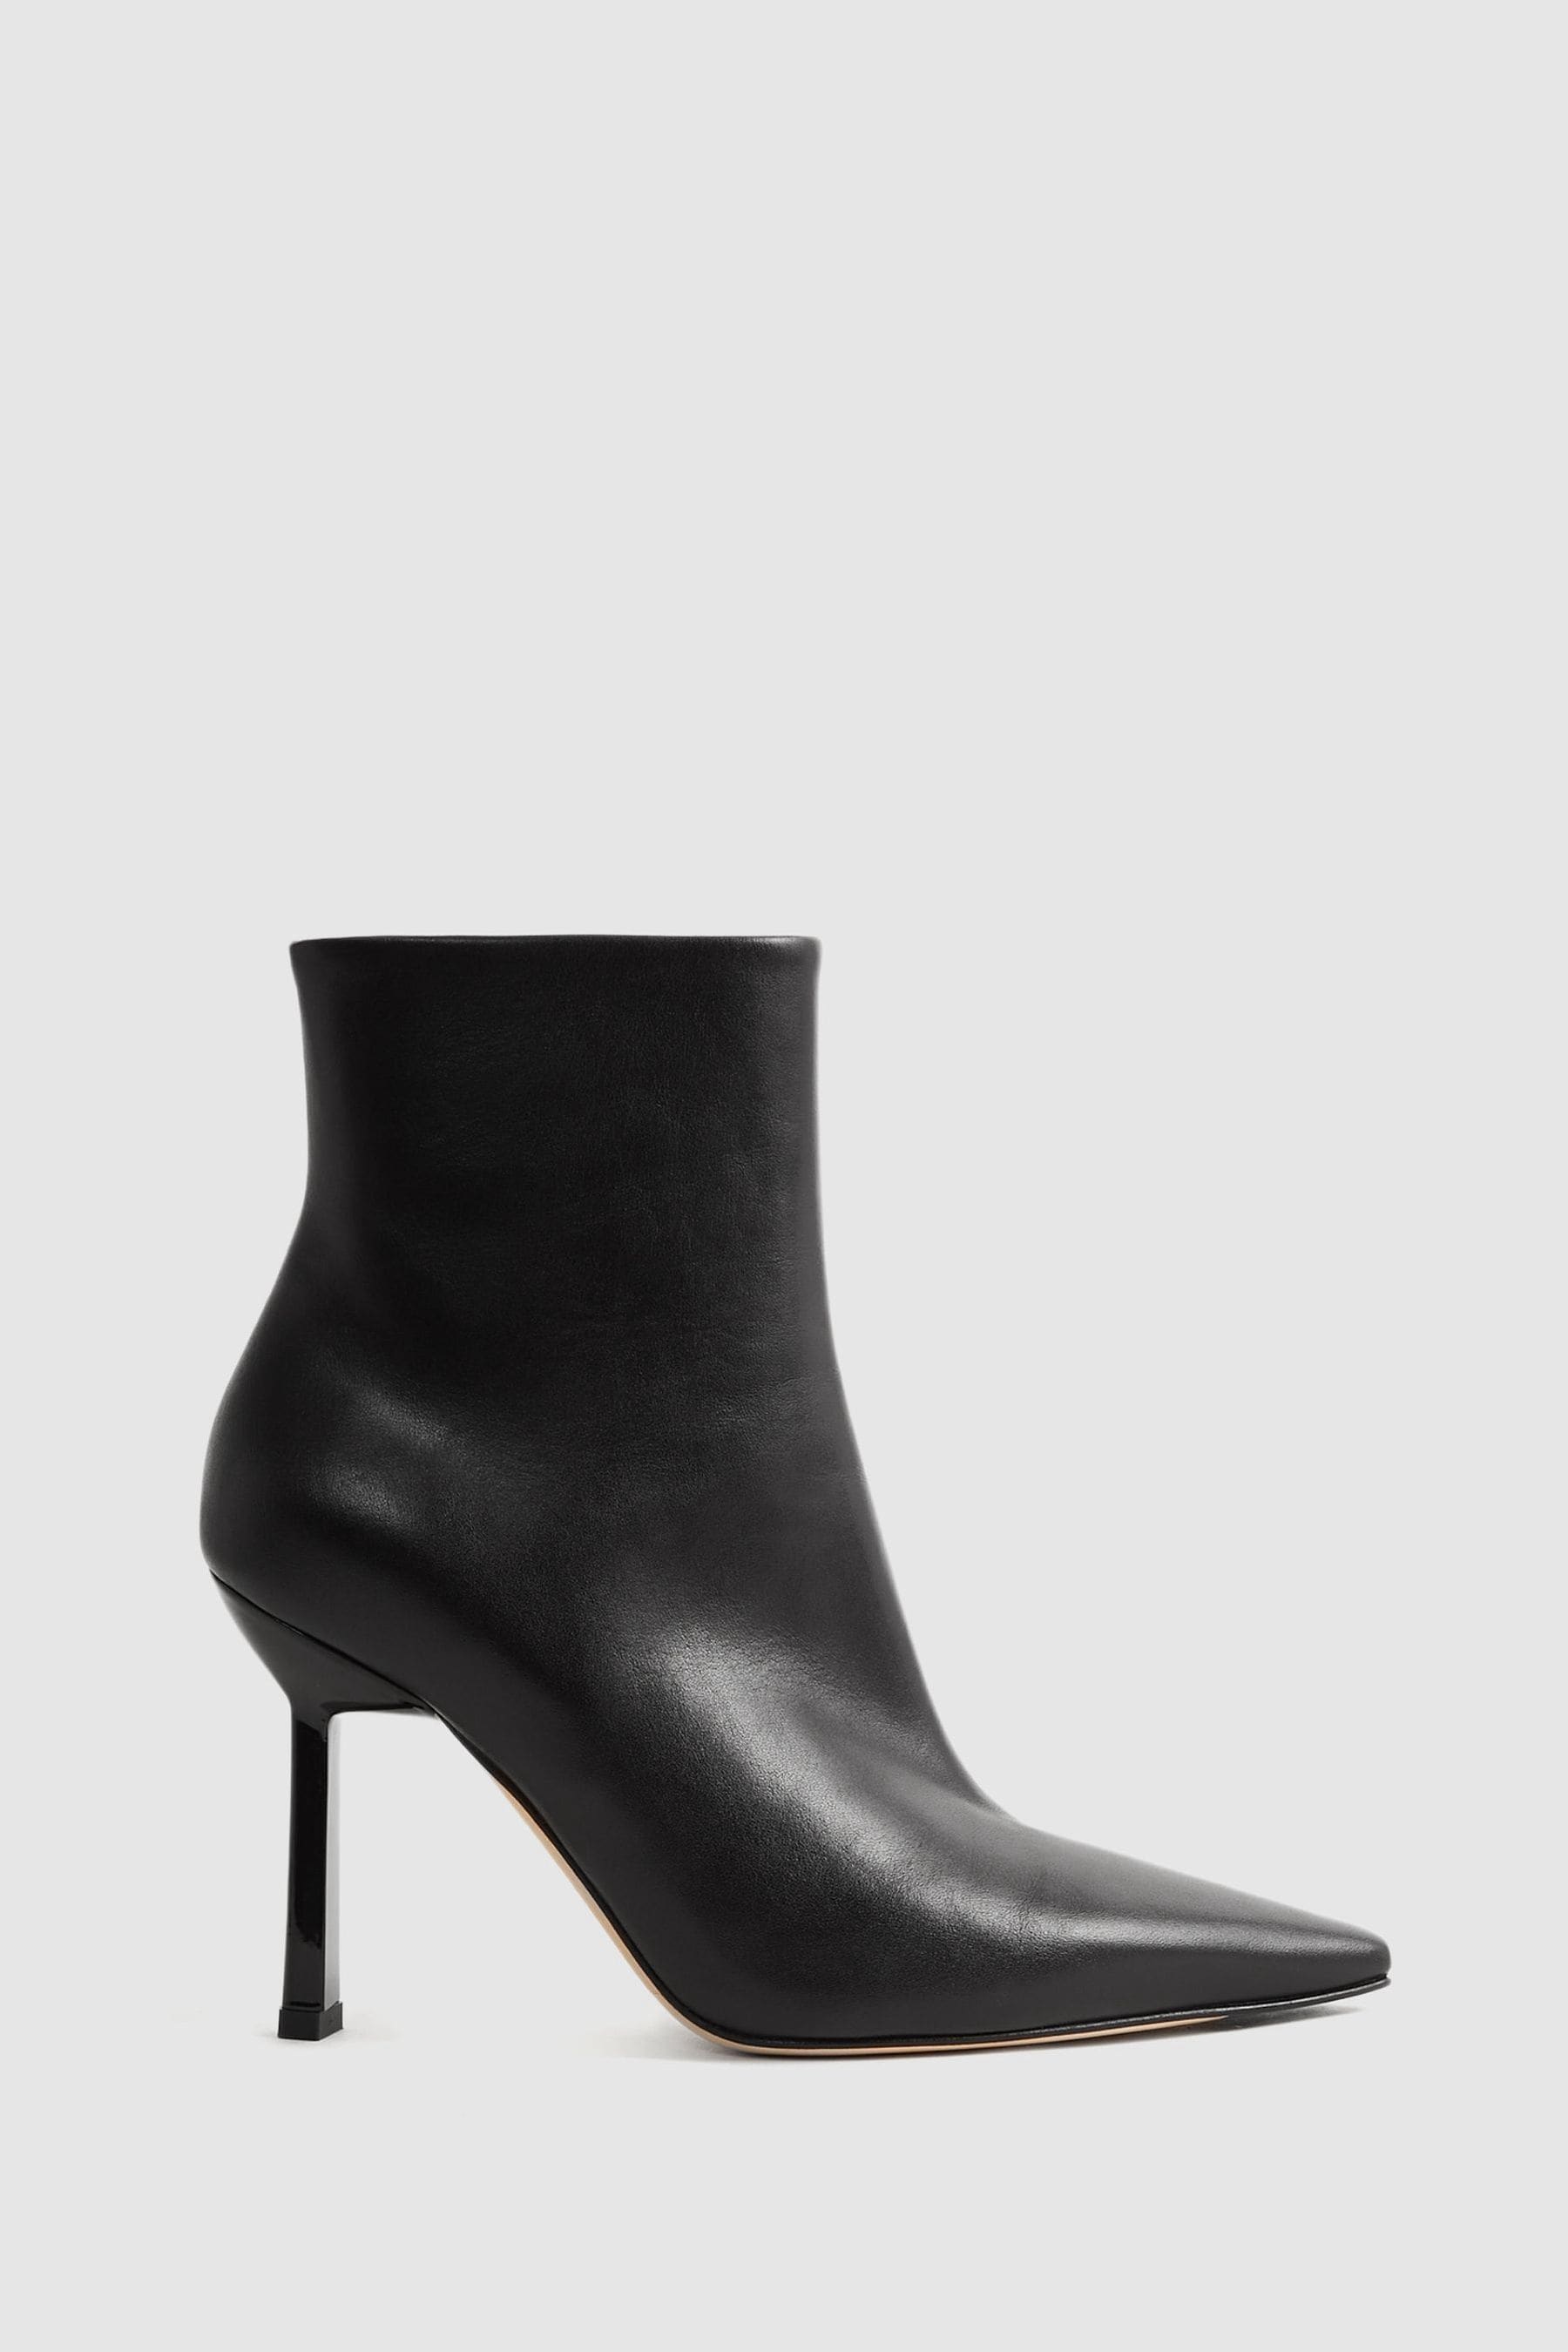 Reiss Scarlett - Black Atelier Italian Leather Heeled Ankle Boots, Uk 6 Eu 39